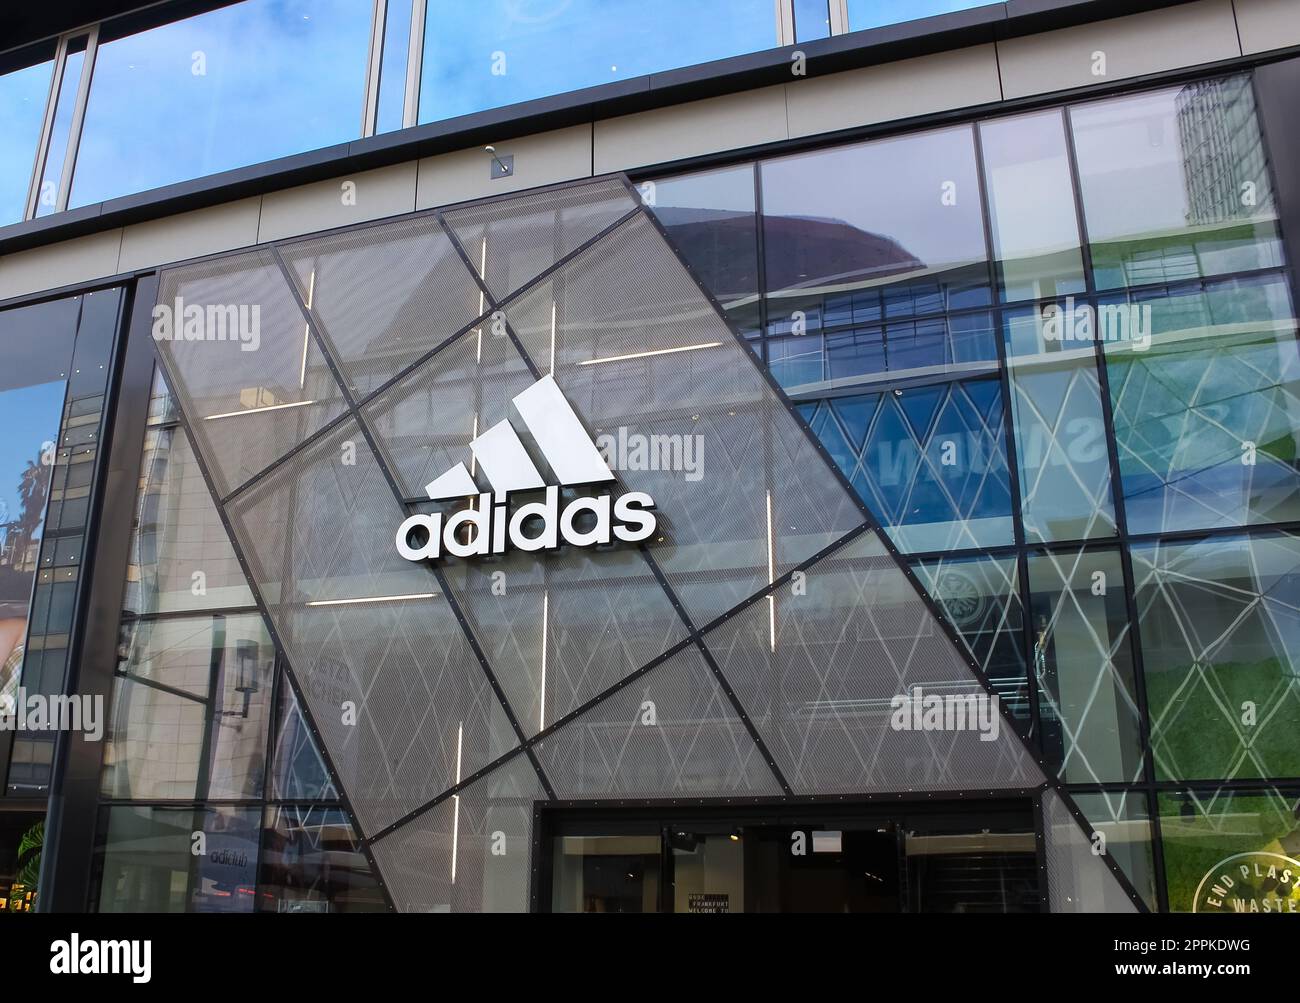 La facciata del negozio Adidas a Francoforte sul meno, Germania Foto Stock